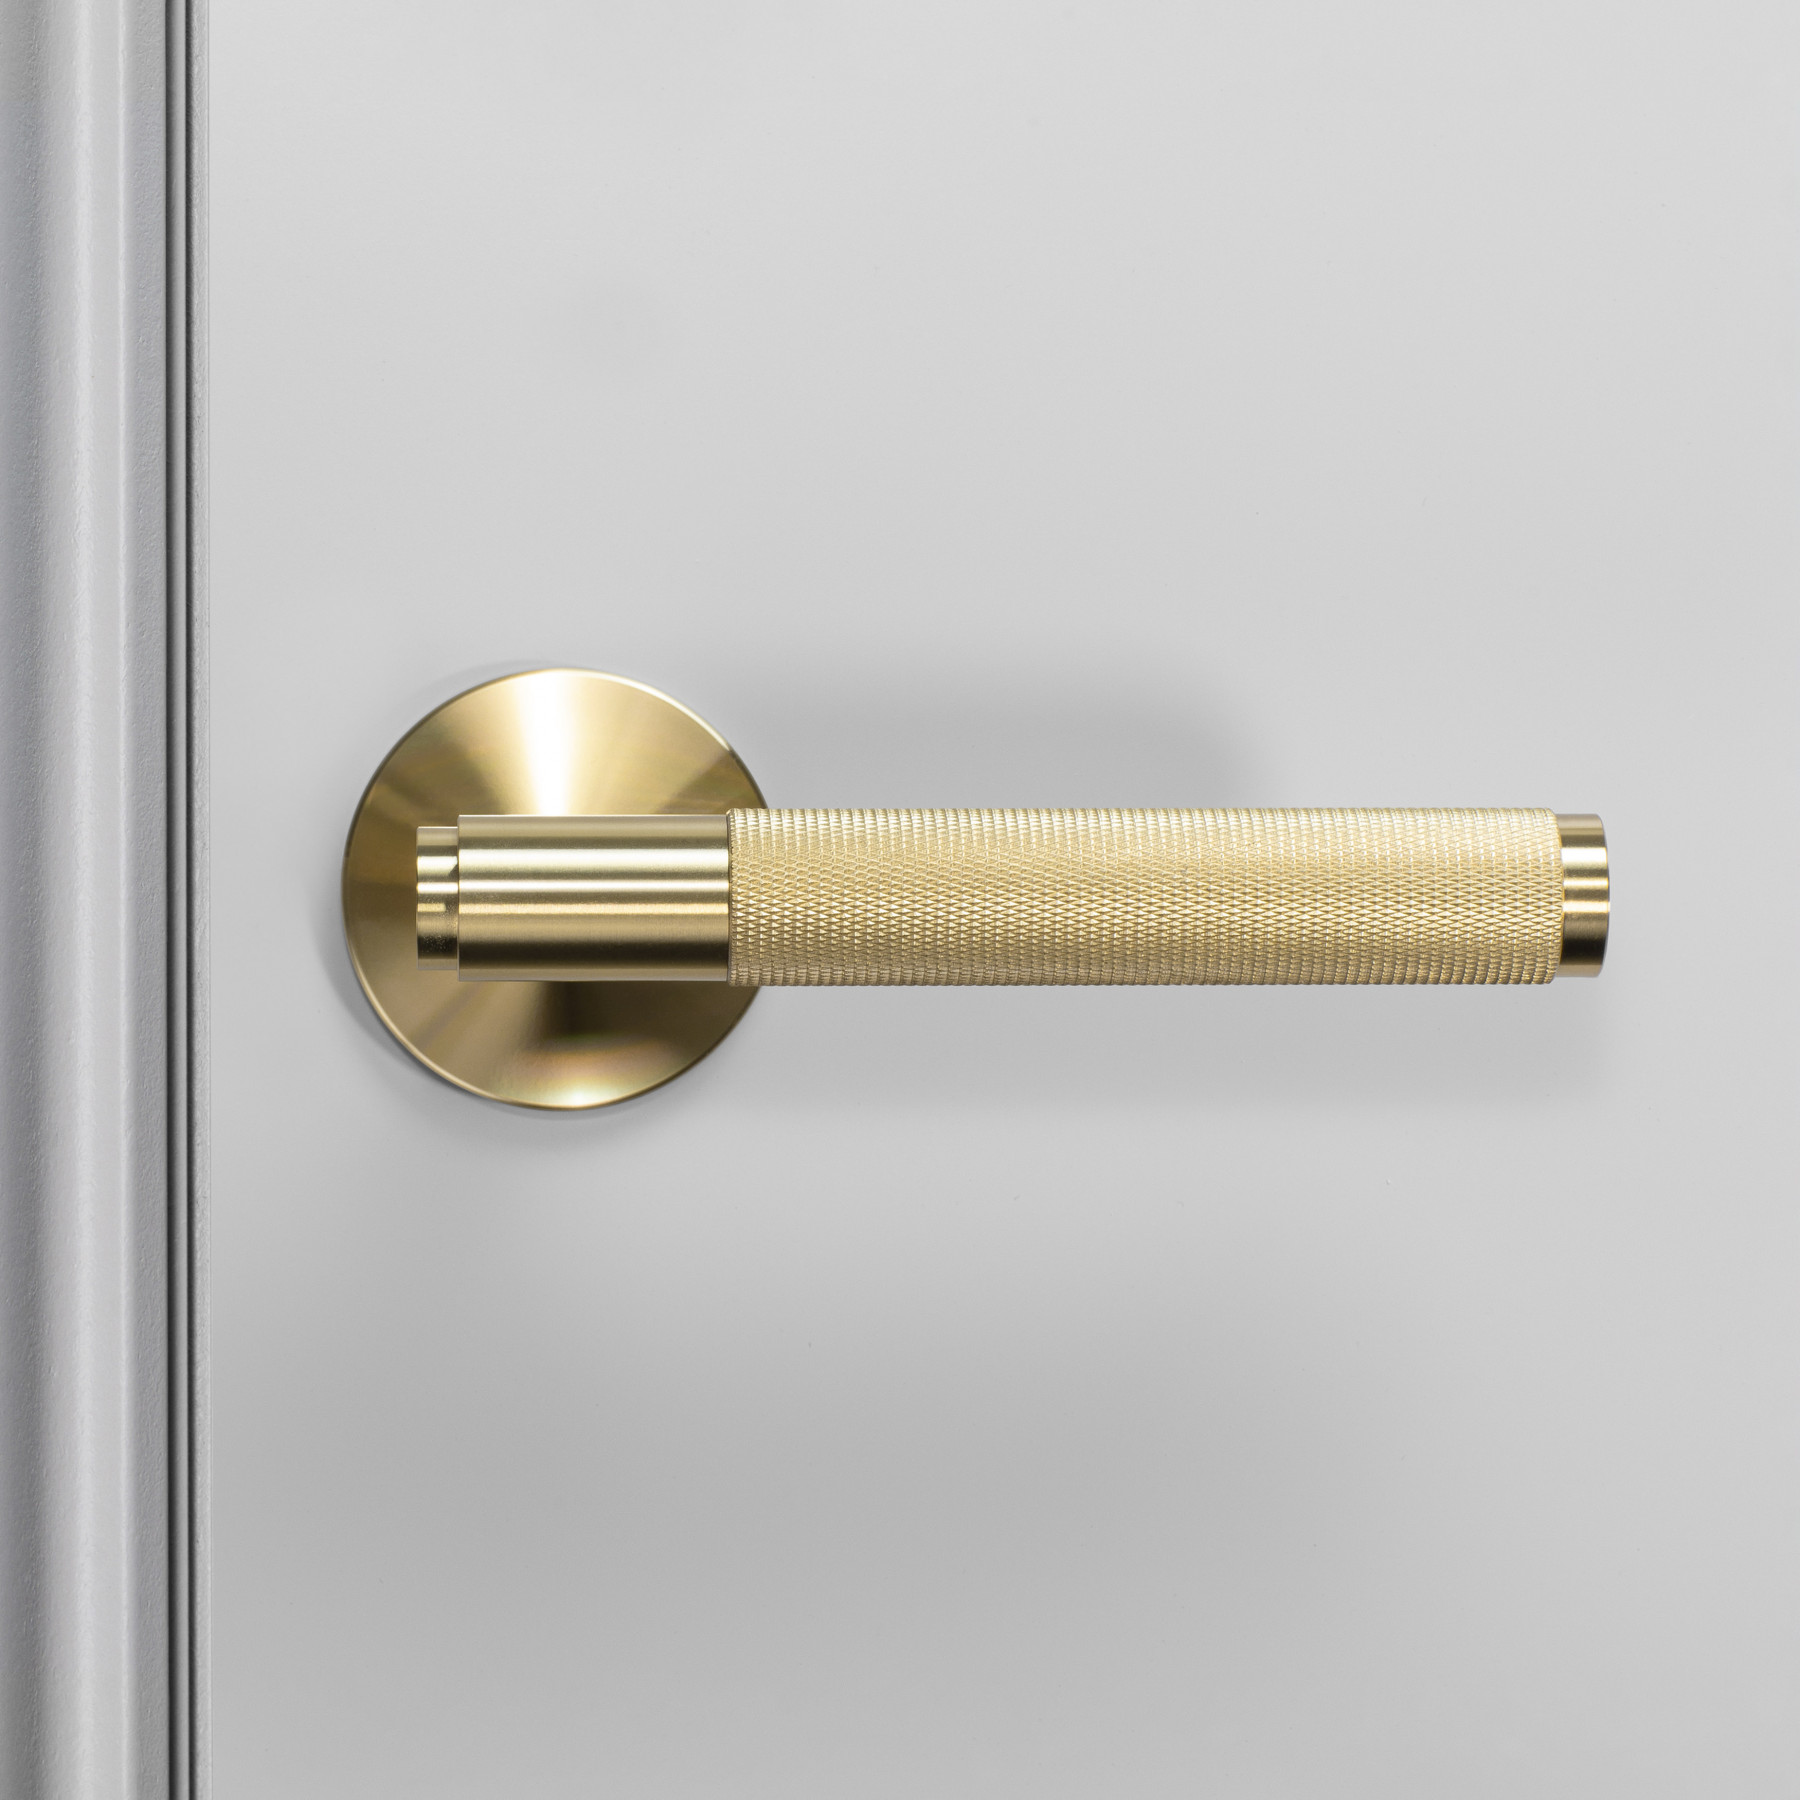  Set Brass Lever Door Handle American Style Interior Door Brass Lever Door Handles